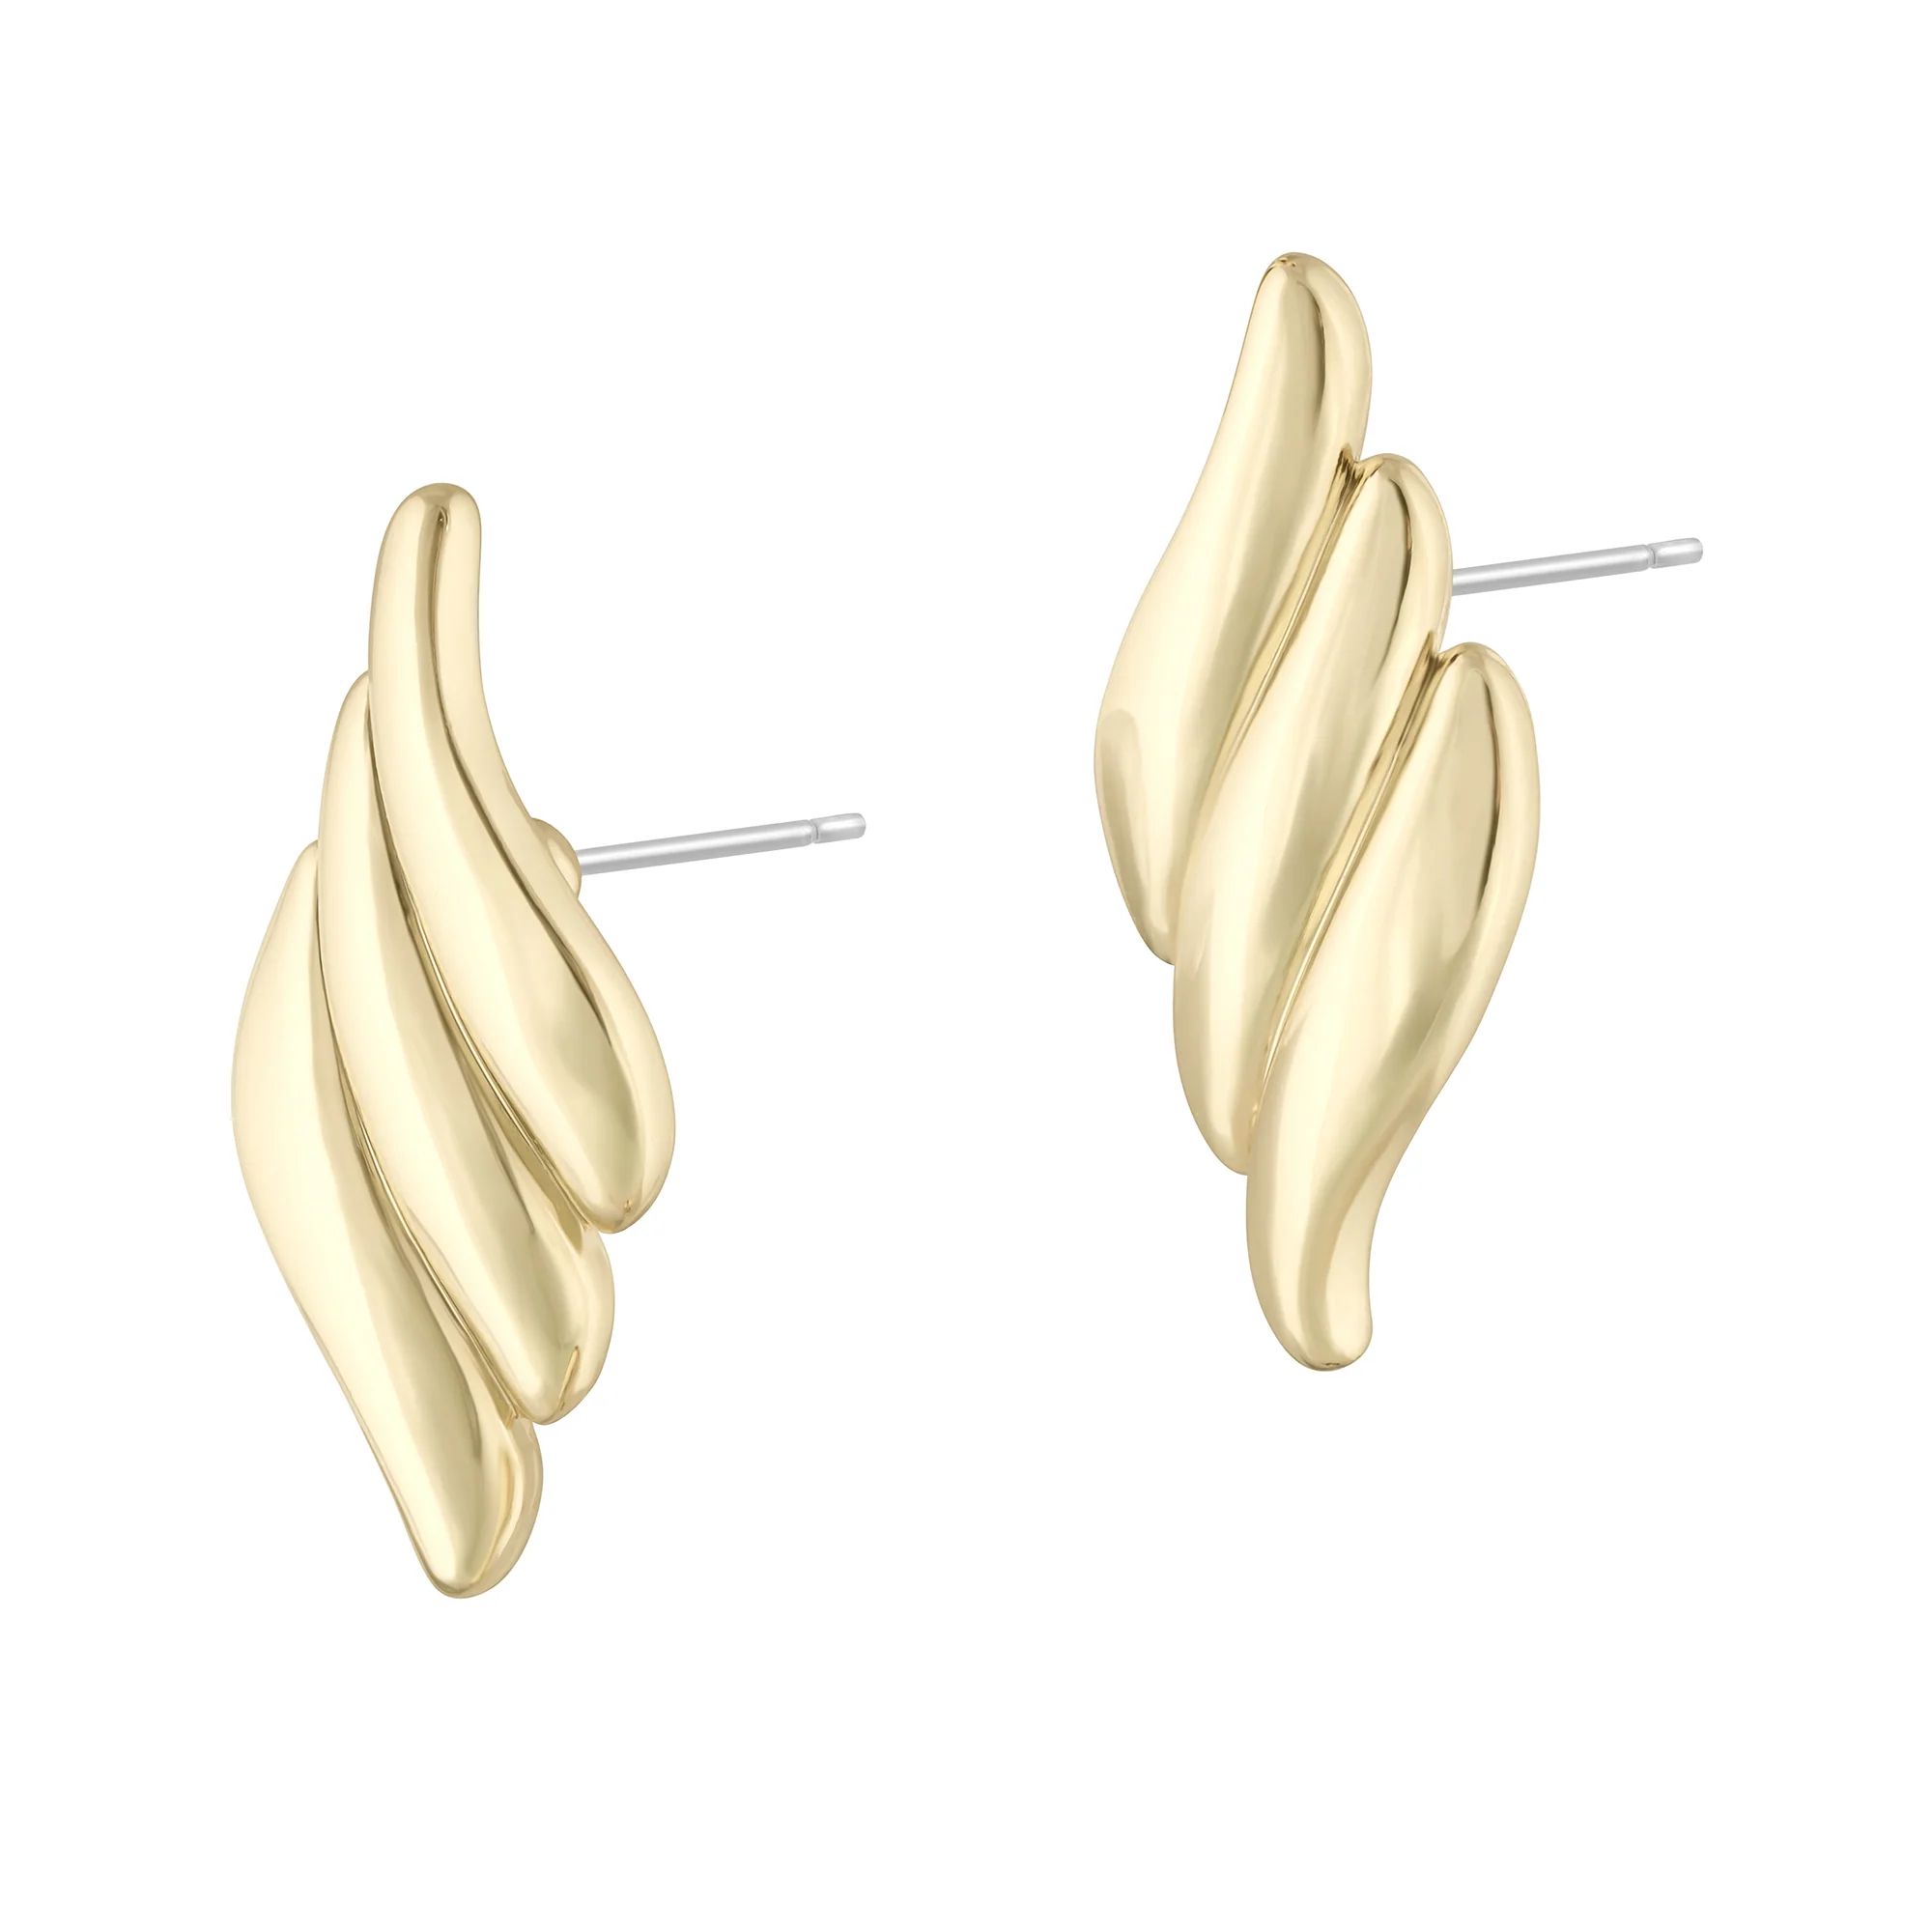 Finley Earrings | Electric Picks Jewelry